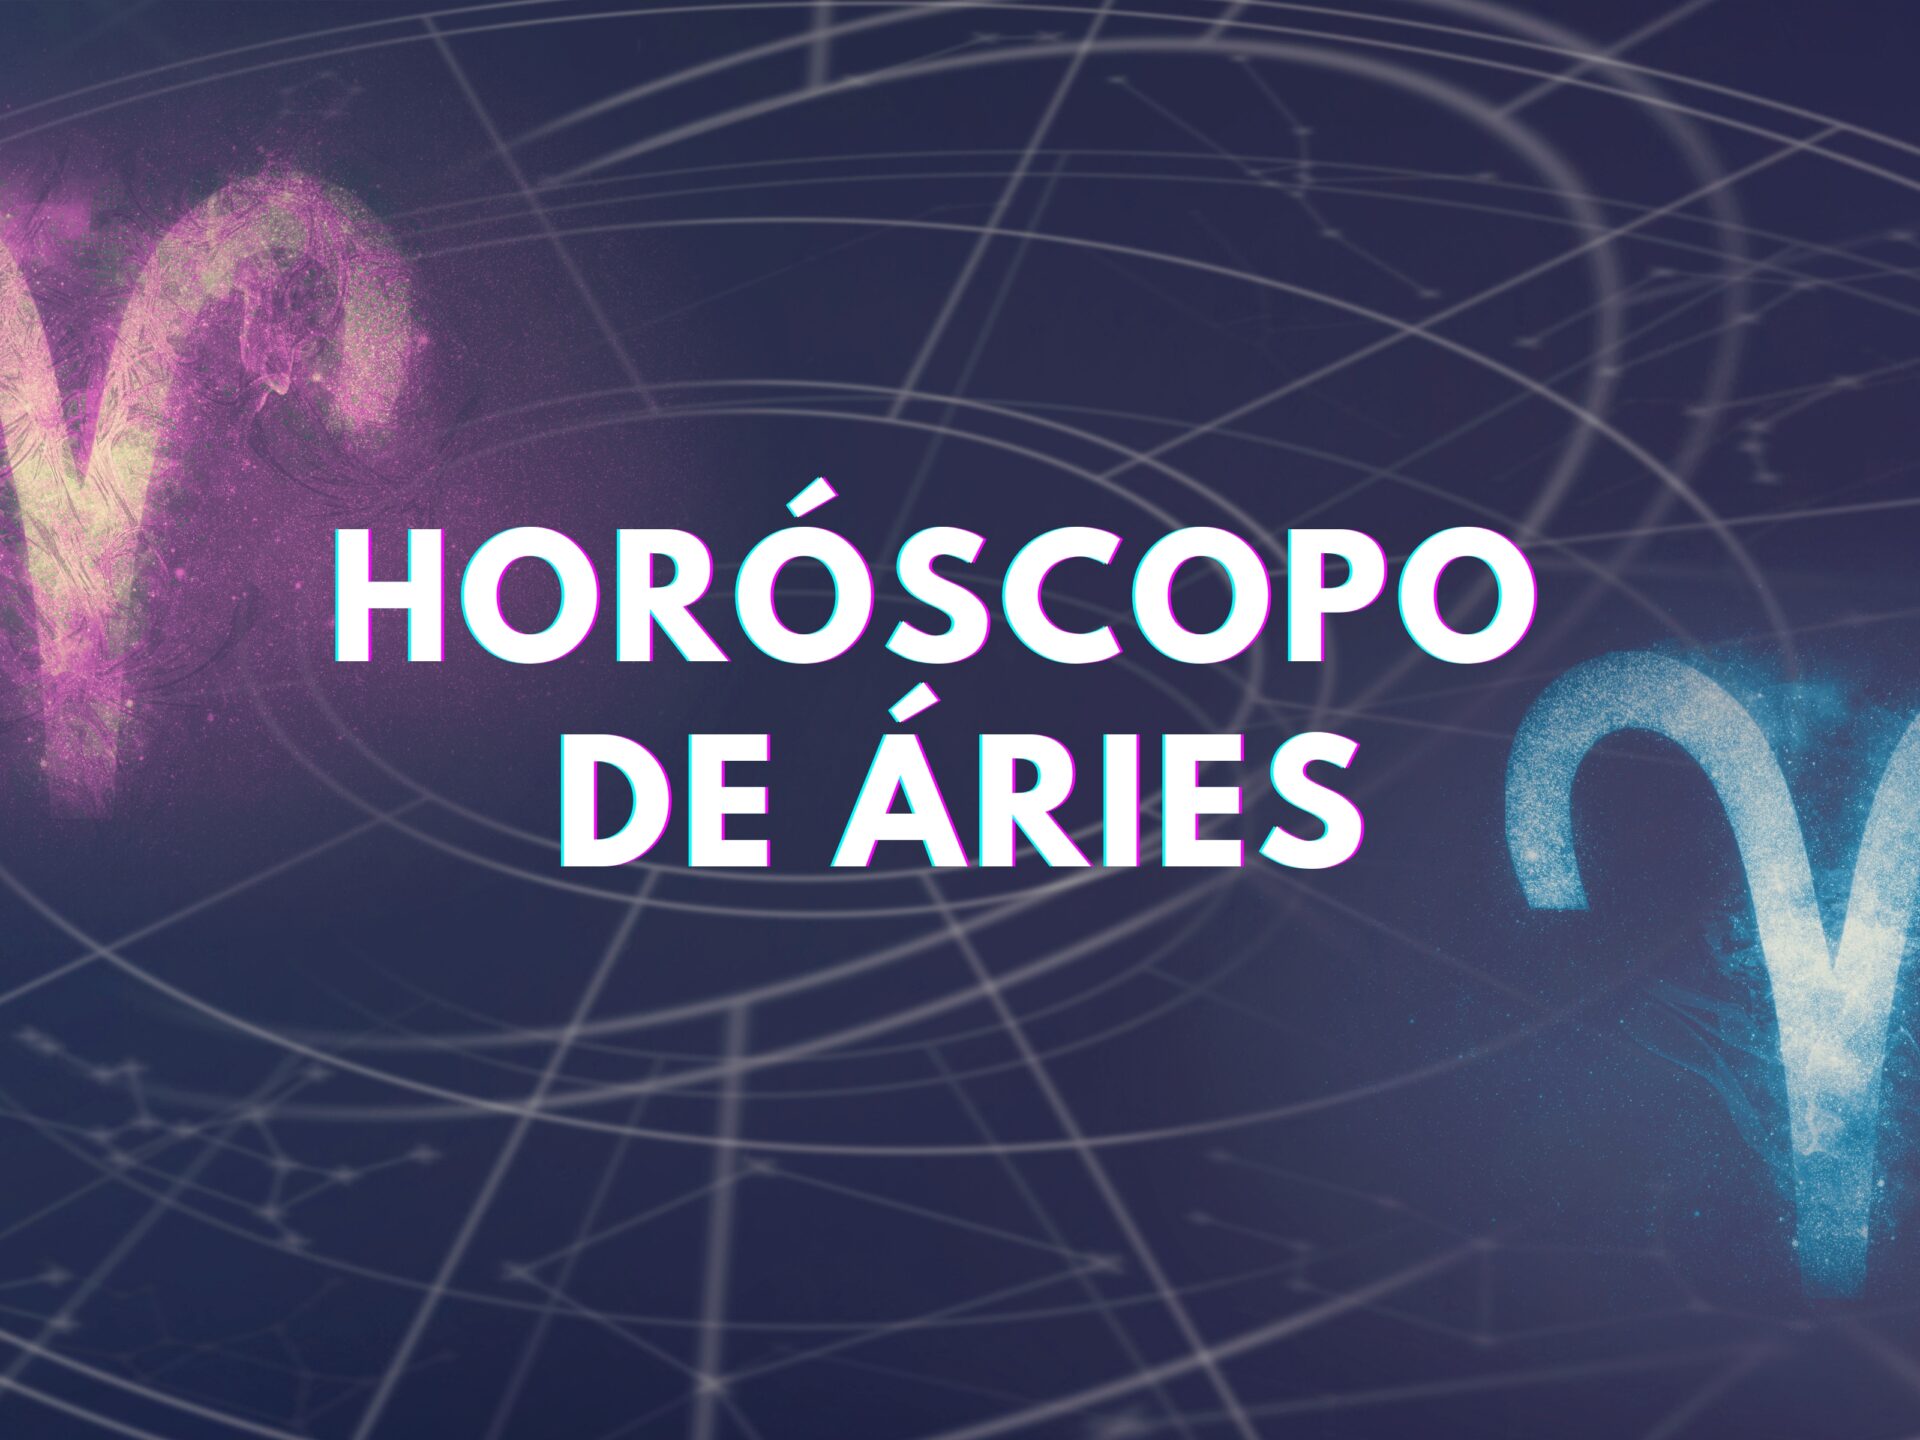 Horóscopo do dia: confira as previsões de Áries para esta terça (20/12)